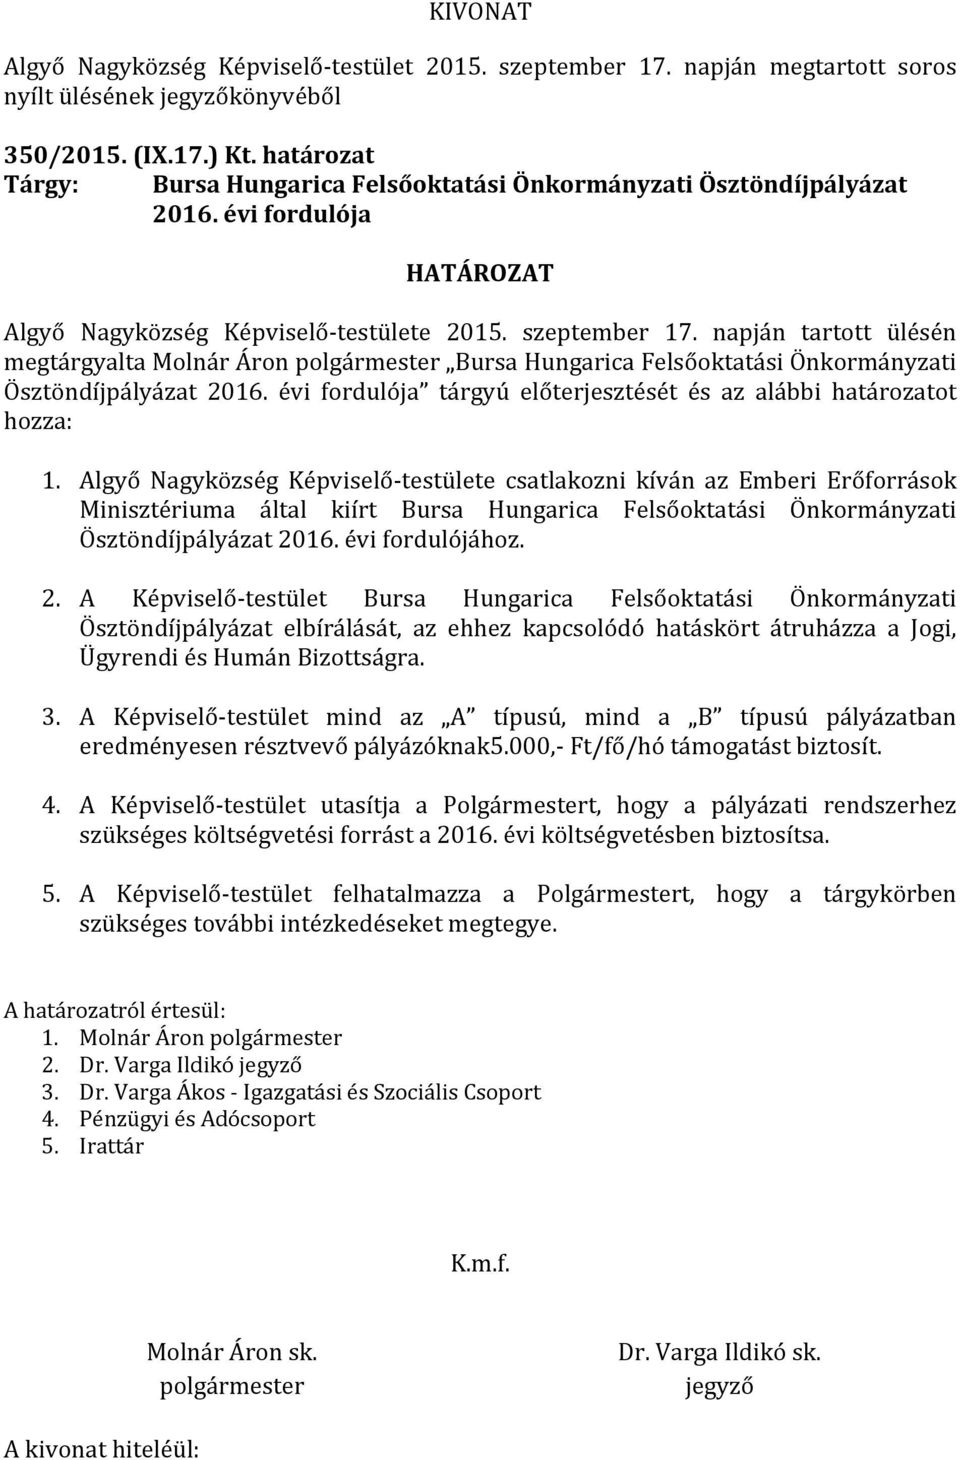 Algyő Nagyközség Képviselő-testülete csatlakozni kíván az Emberi Erőforrások Minisztériuma által kiírt Bursa Hungarica Felsőoktatási Önkormányzati Ösztöndíjpályázat 20